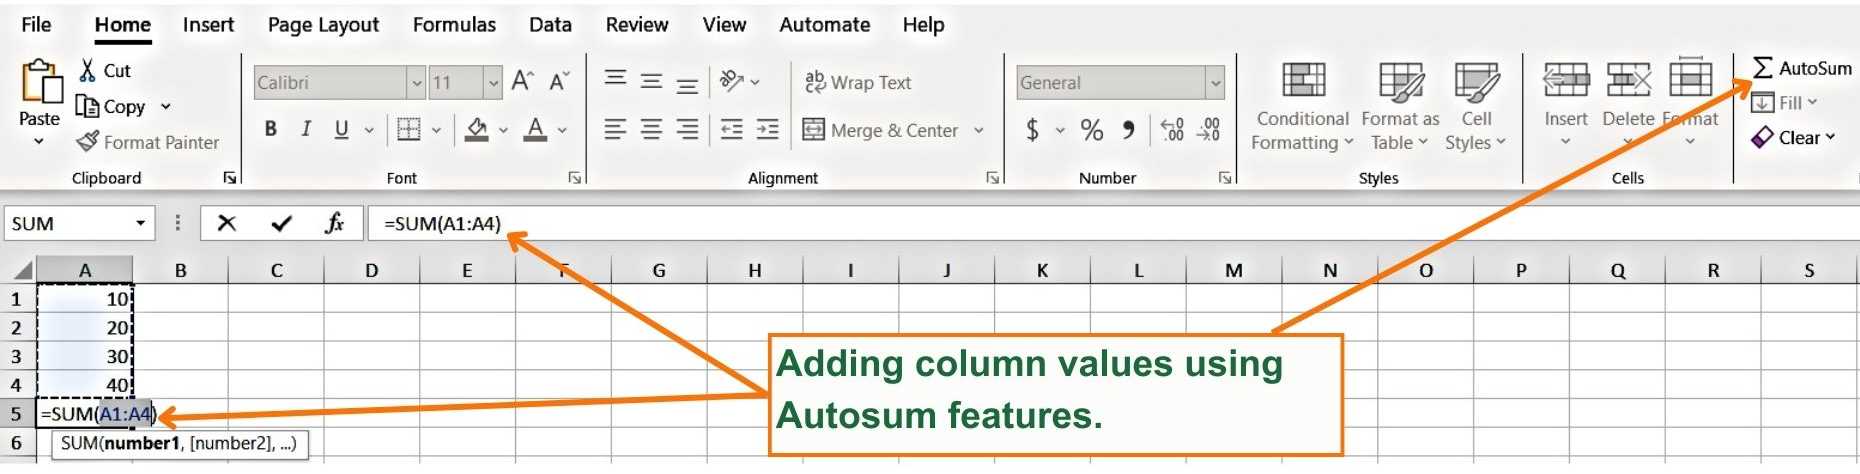 Adding column values using Autosum features - Excel Hippo